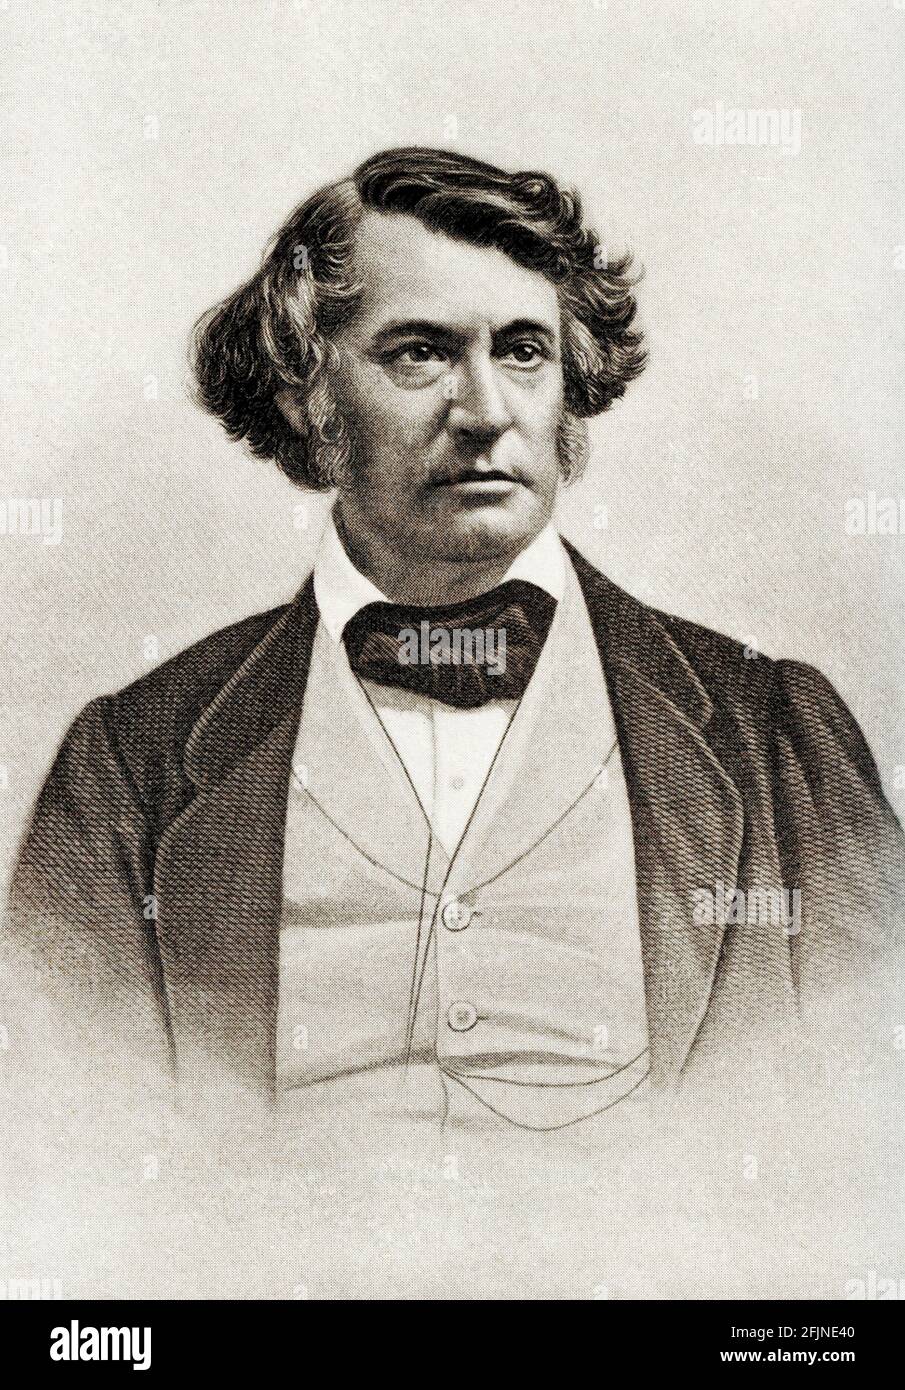 Charles Sumner (1811-1874) était un homme d'État américain et sénateur américain du Massachusetts. En tant qu'avocat universitaire et orateur puissant, Sumner était le chef des forces anti-esclavagistes dans l'État et un chef des Républicains radicaux au Sénat américain pendant la guerre de Sécession. Banque D'Images